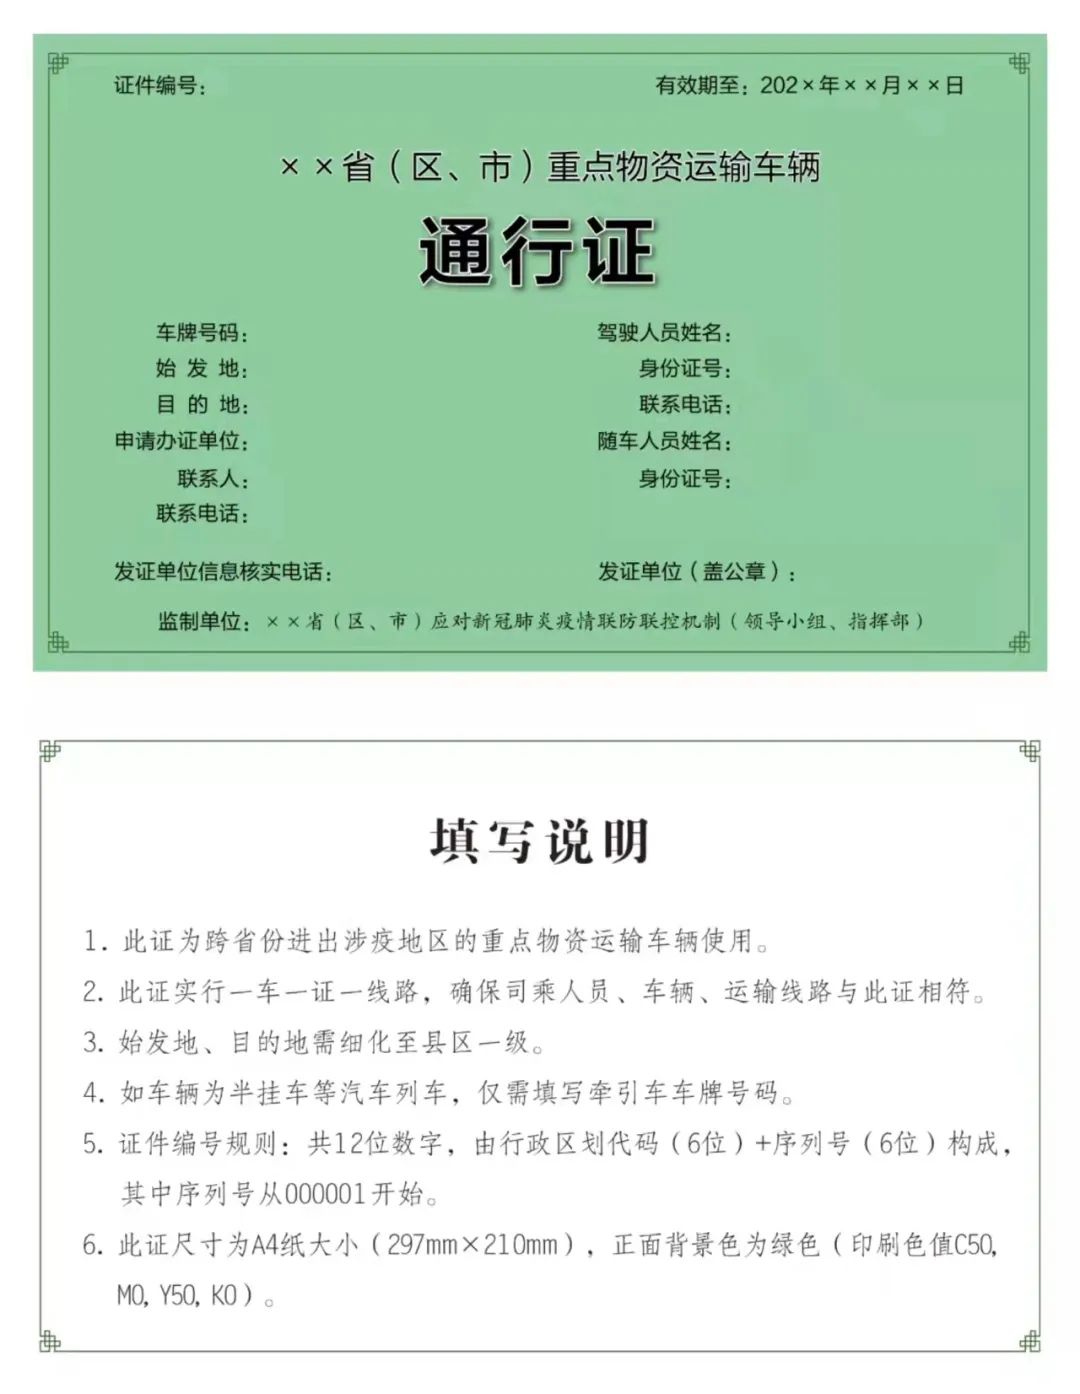 七大快递均已纳入上海青浦复工复产白名单 正申请全国绿证